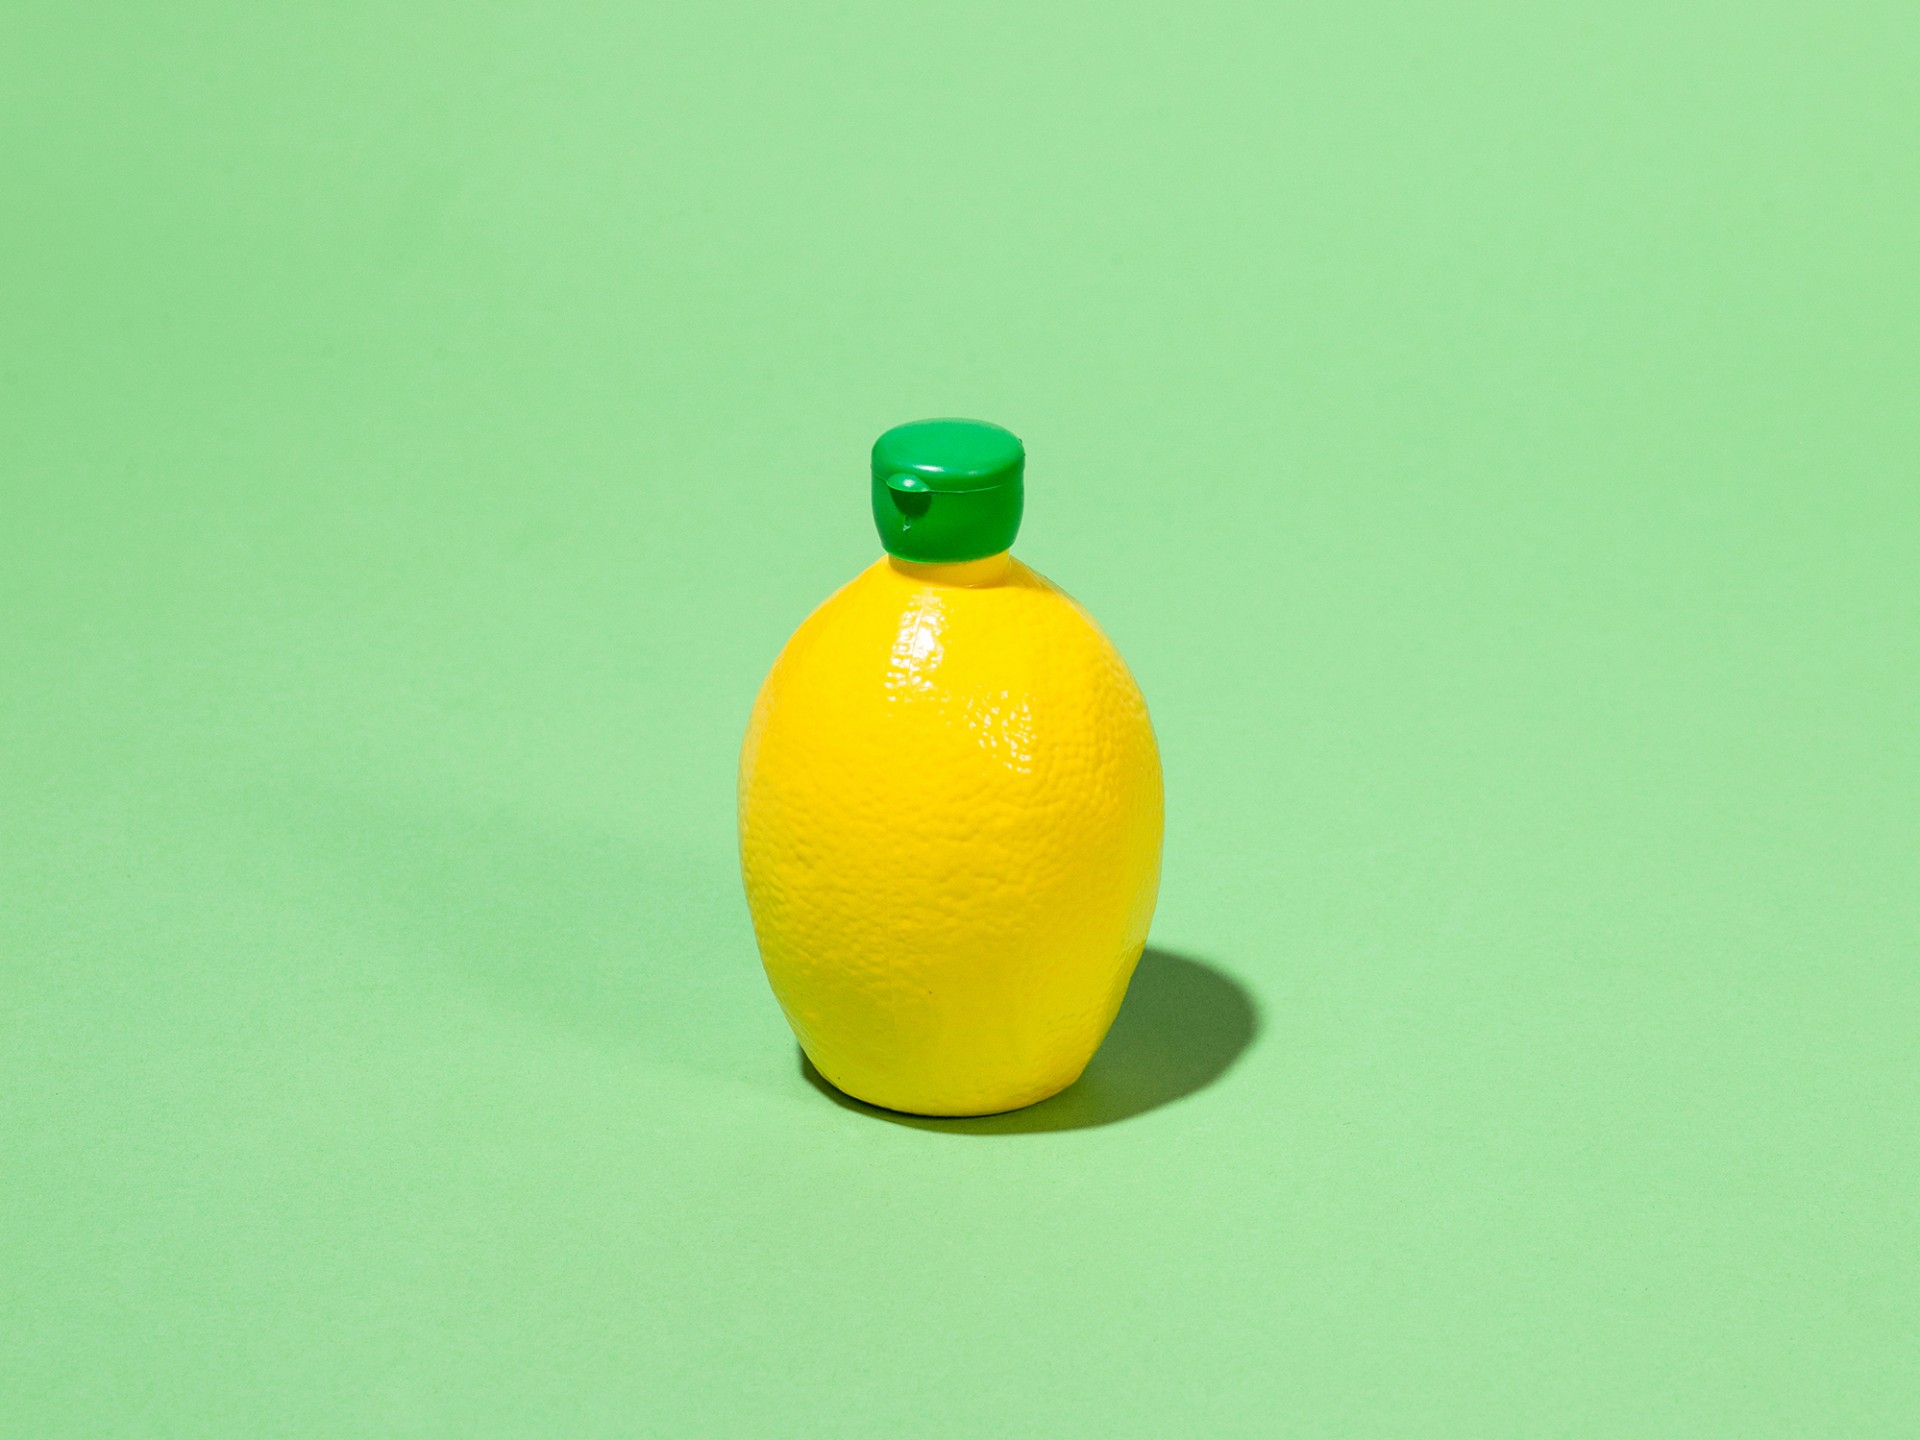 Lemon. Image: Ariel Zambelich/NPR